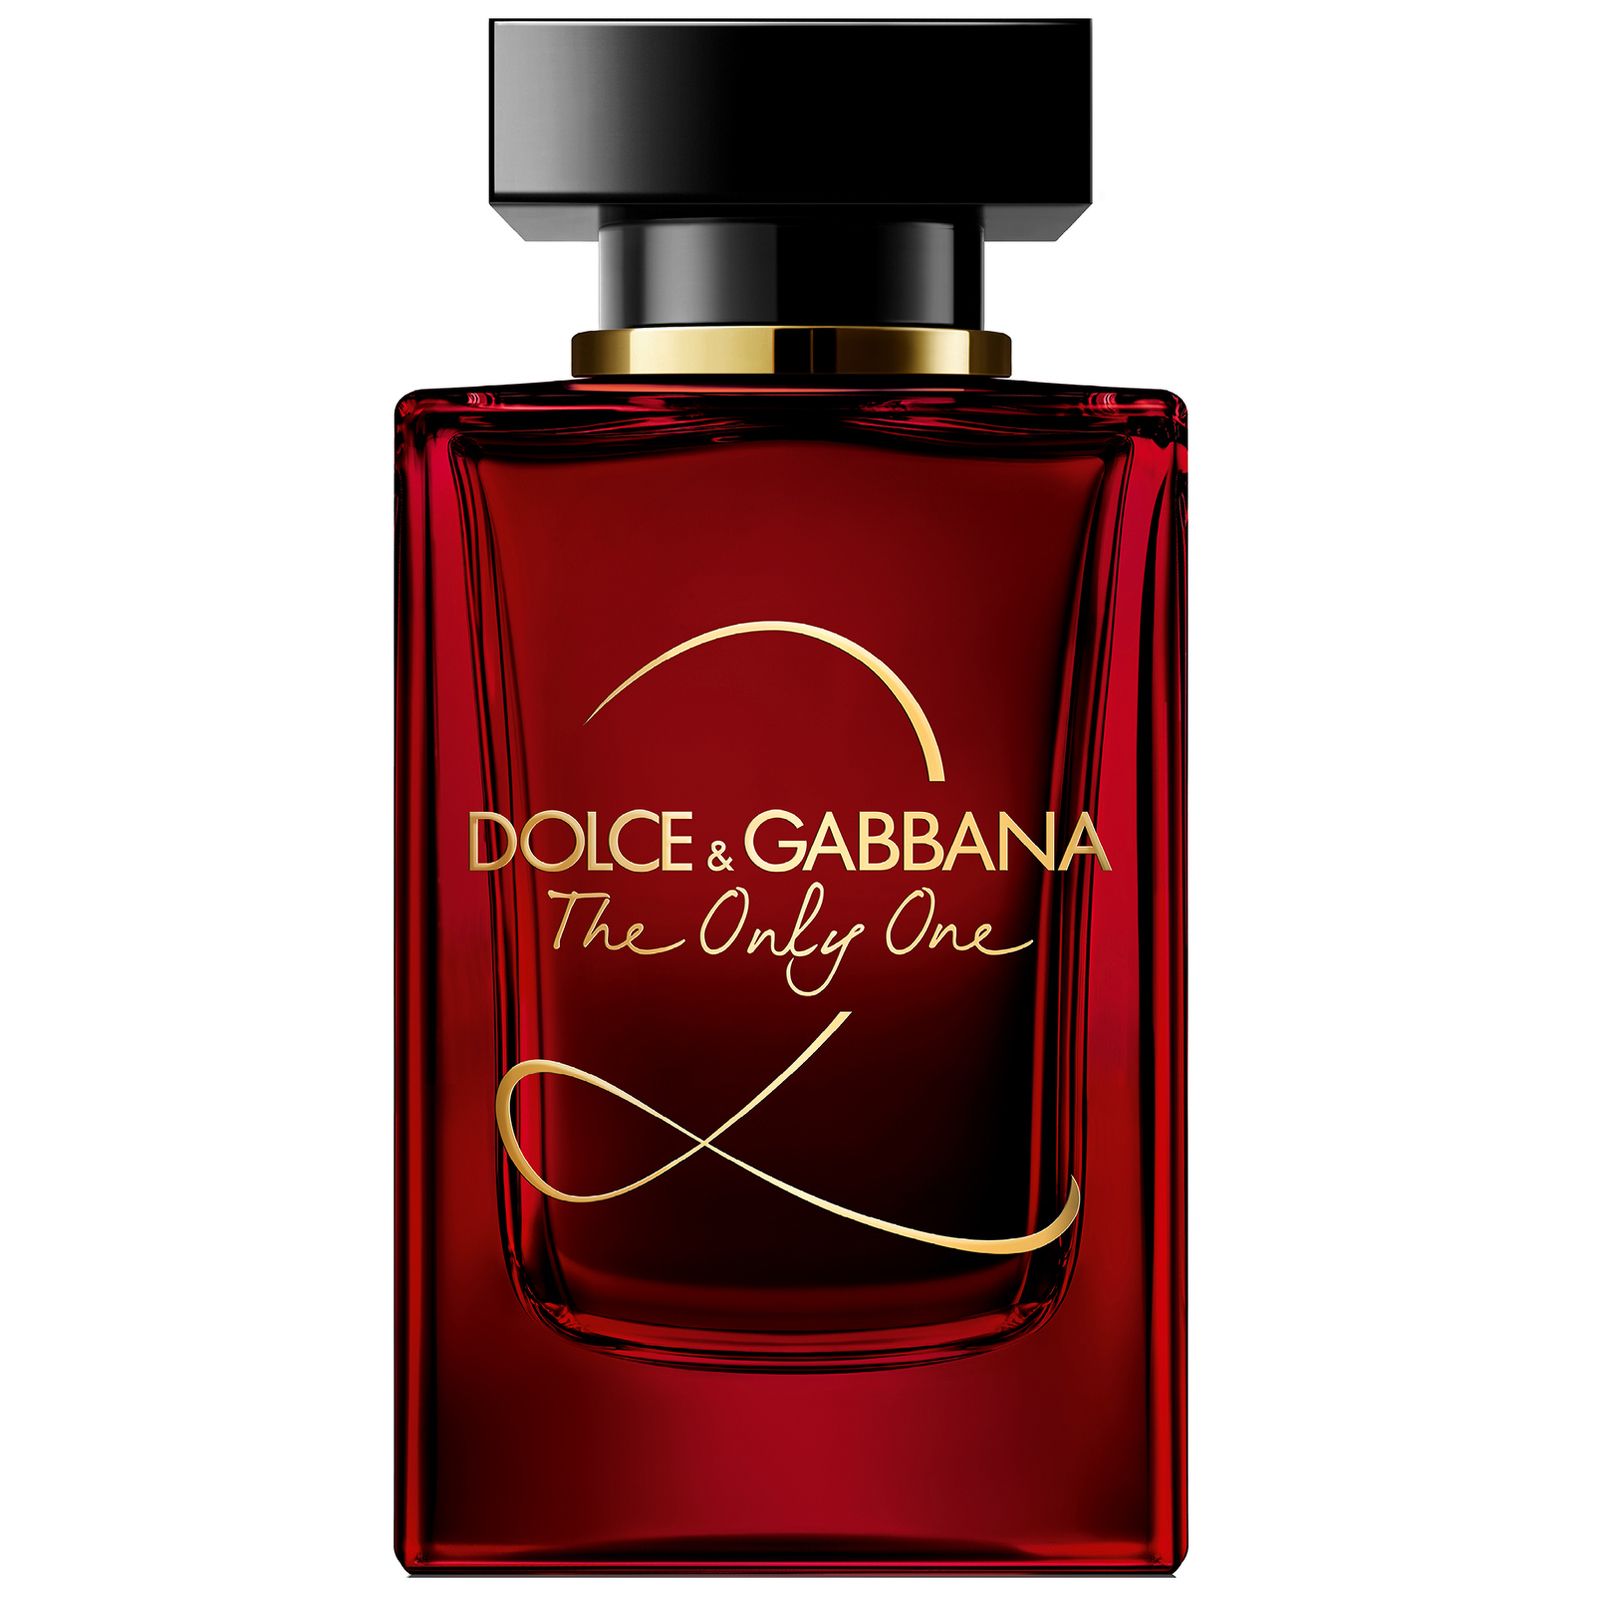 Парфюм дольче габбана в летуаль. Dolce Gabbana the only one 2 100 мл. Dolce& Gabbana the only one 2 EDP, 100 ml. Dolce Gabbana the only one 2 30 мл. Dolce & Gabbana the only one, EDP., 100 ml.